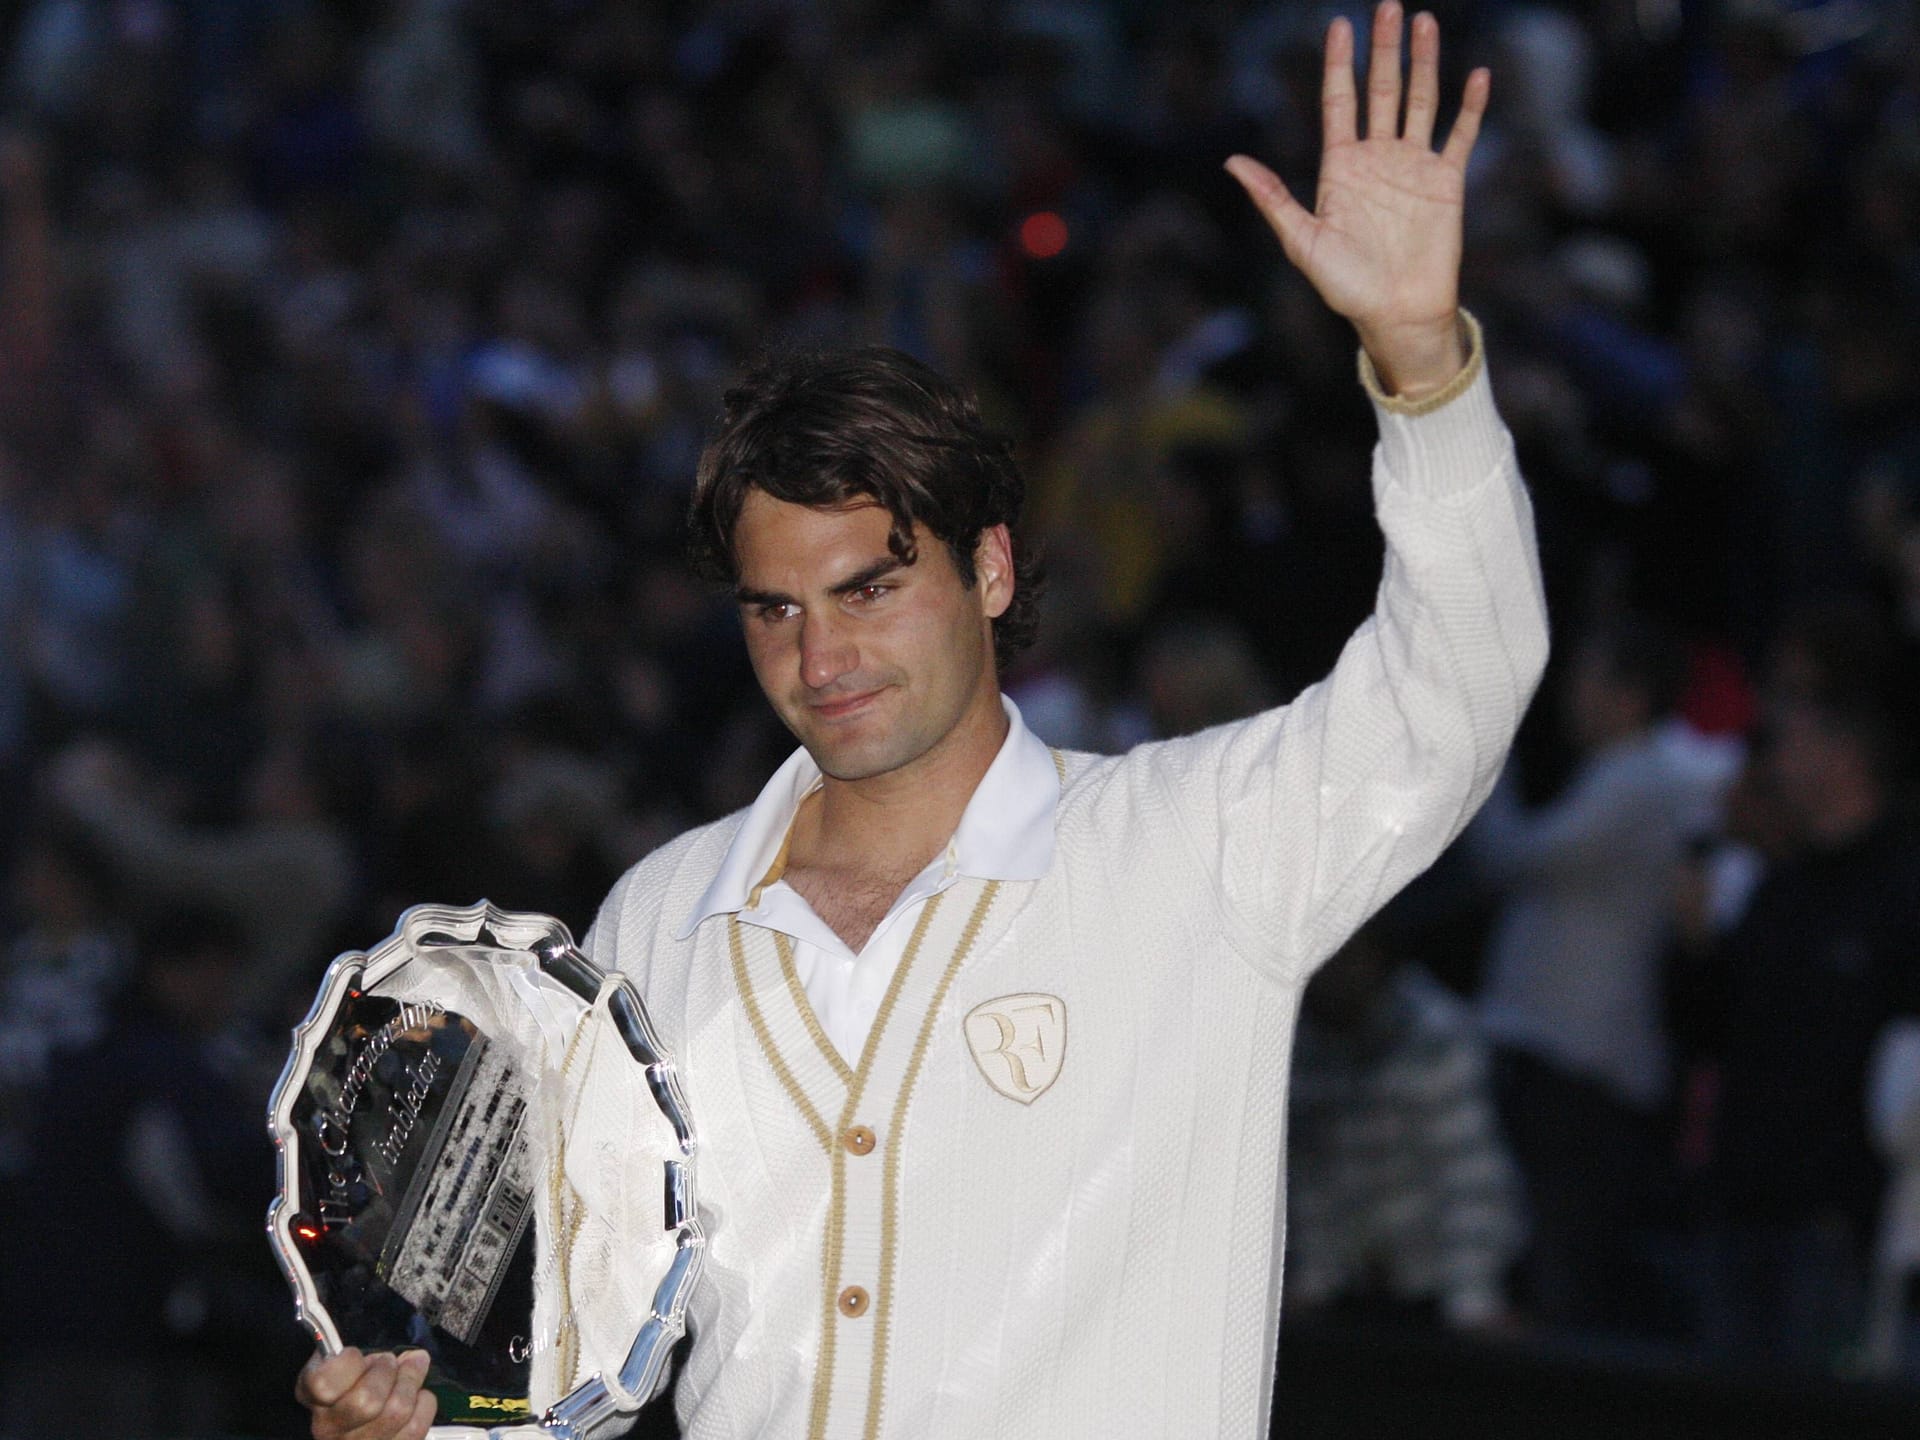 Wimbledon 2008: Doch Federer hat in seiner langen Karriere auch schmerzhafte Niederlagen zu verkraften. So unter anderem beim Wimbledon-Finale 2008. Bei einbrechender Dunkelheit verliert der Schweizer den fünften Satz gegen Rafael Nadal. Nach fünf Titeln in Folge verlässt Federer den berühmten Centre-Court erstmals wieder als Verlierer.